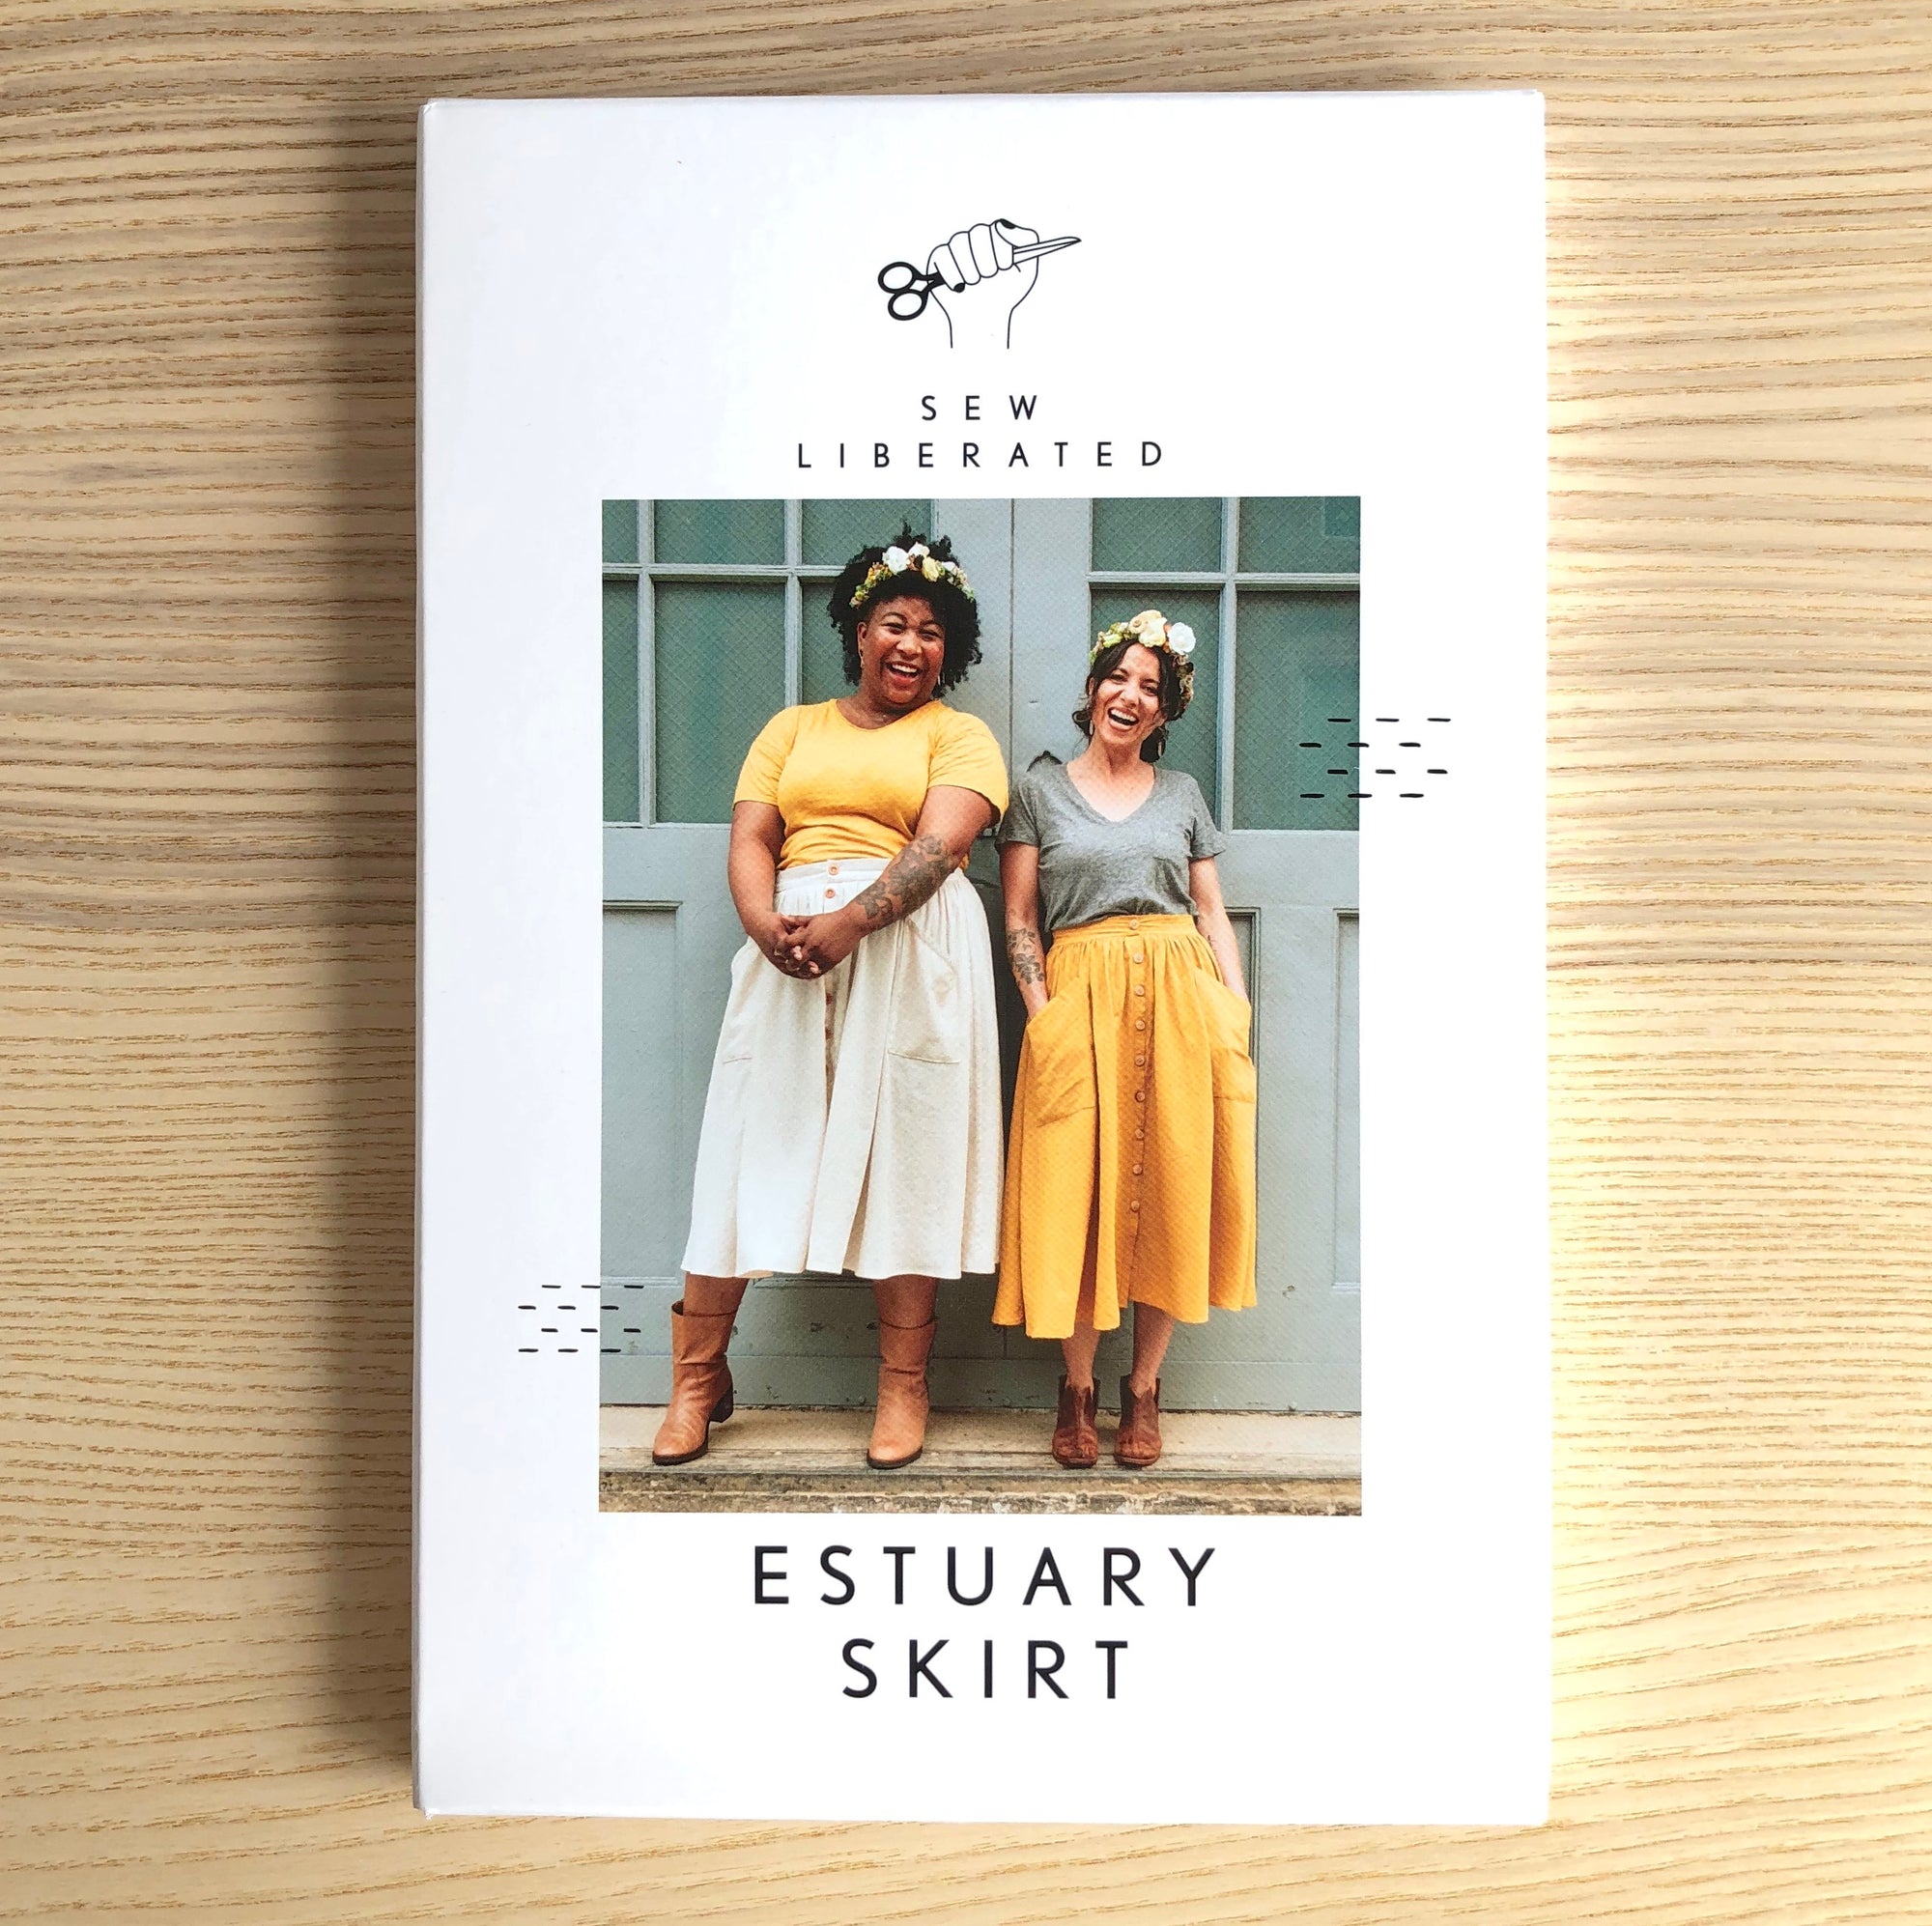 Estuary Skirt Pattern